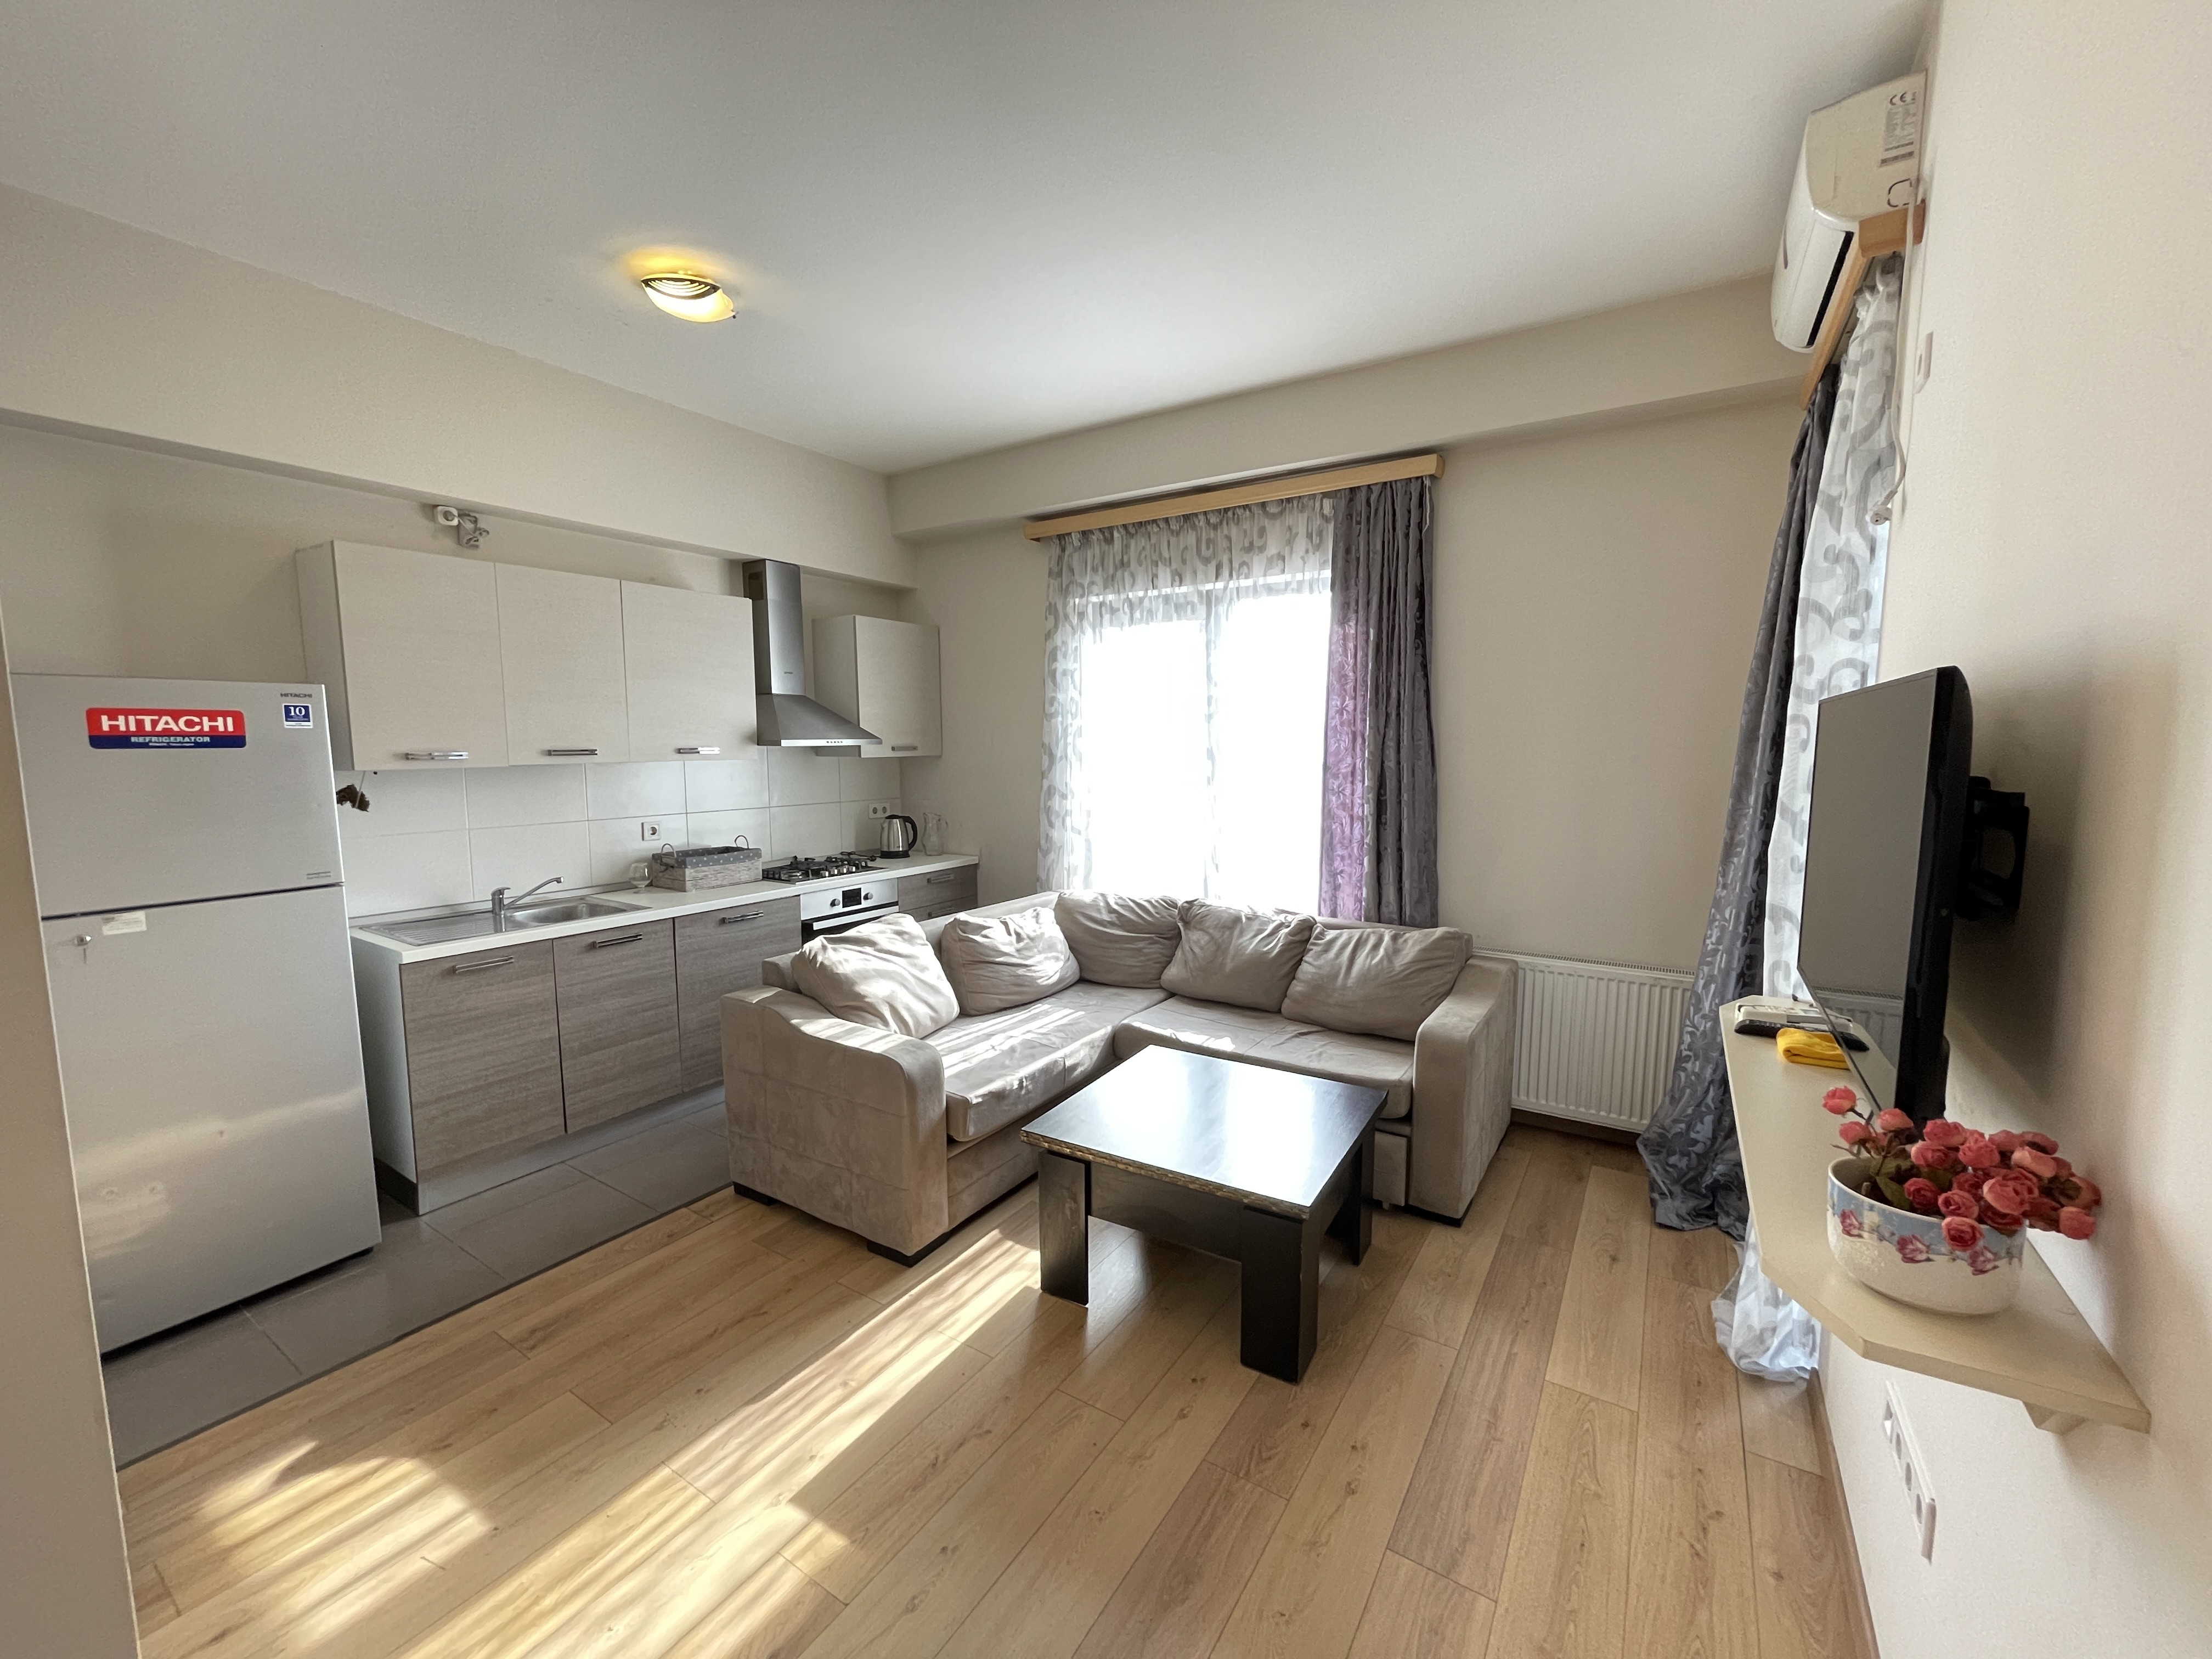 2-Room Apartment For Rent in “M2 Nutsubidze”